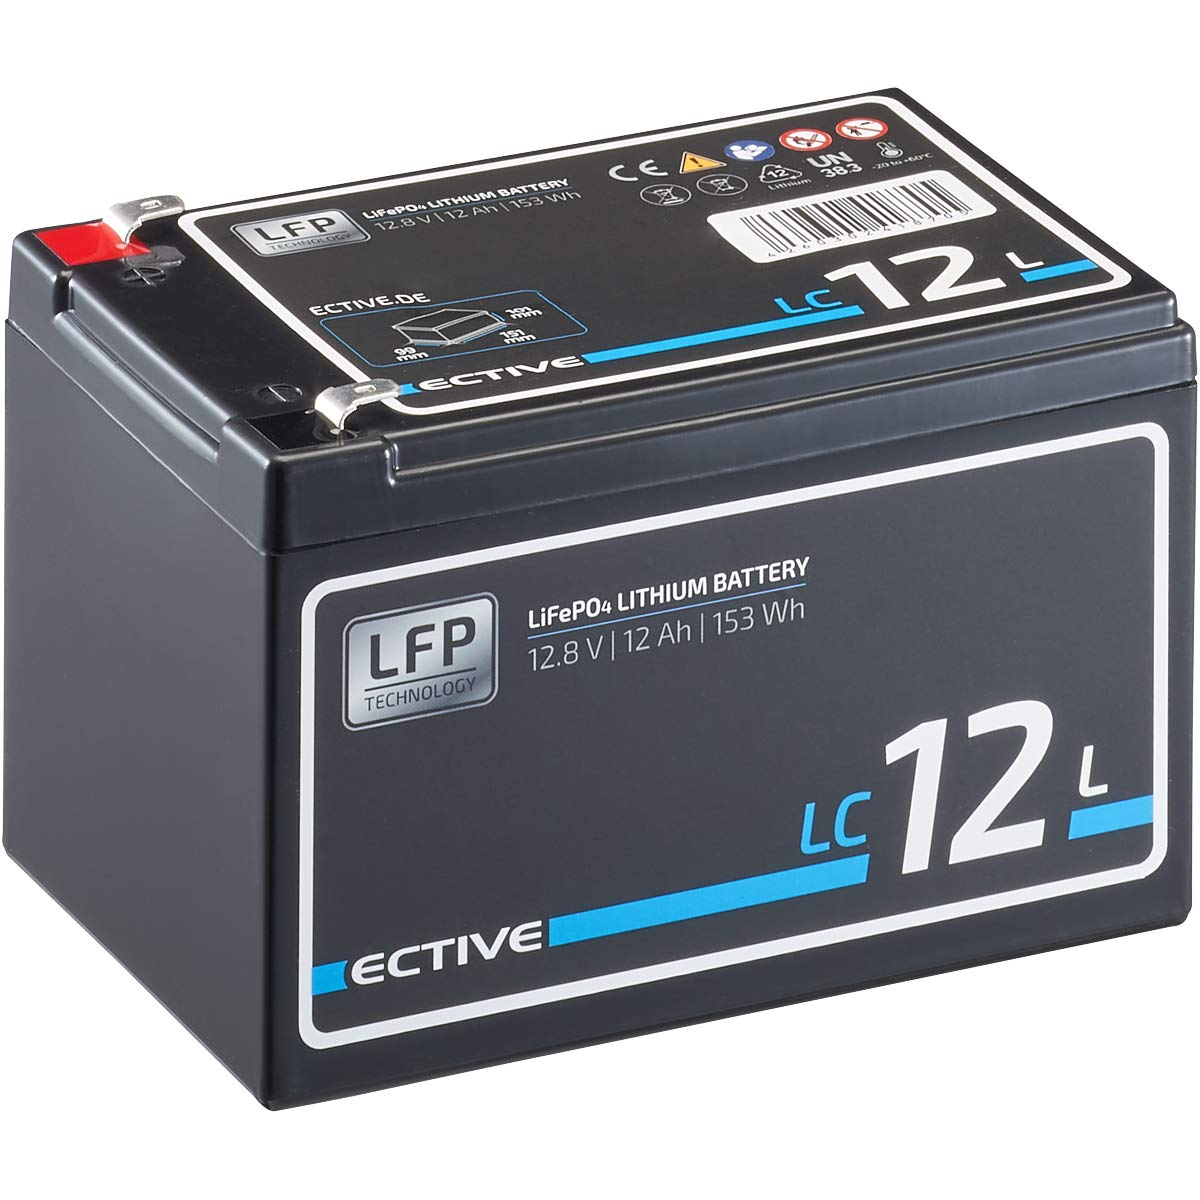 ECTIVE LiFePO4 Batterie LC12L - 12V, 12Ah, 153Wh, mit BMS - Lithium-Eisenphosphat Versorgungsbatterie, Bootsbatterie, Solarbatterie, Aufbaubaterie für Wohnwagen, Wohnmobil, Camper von ECTIVE